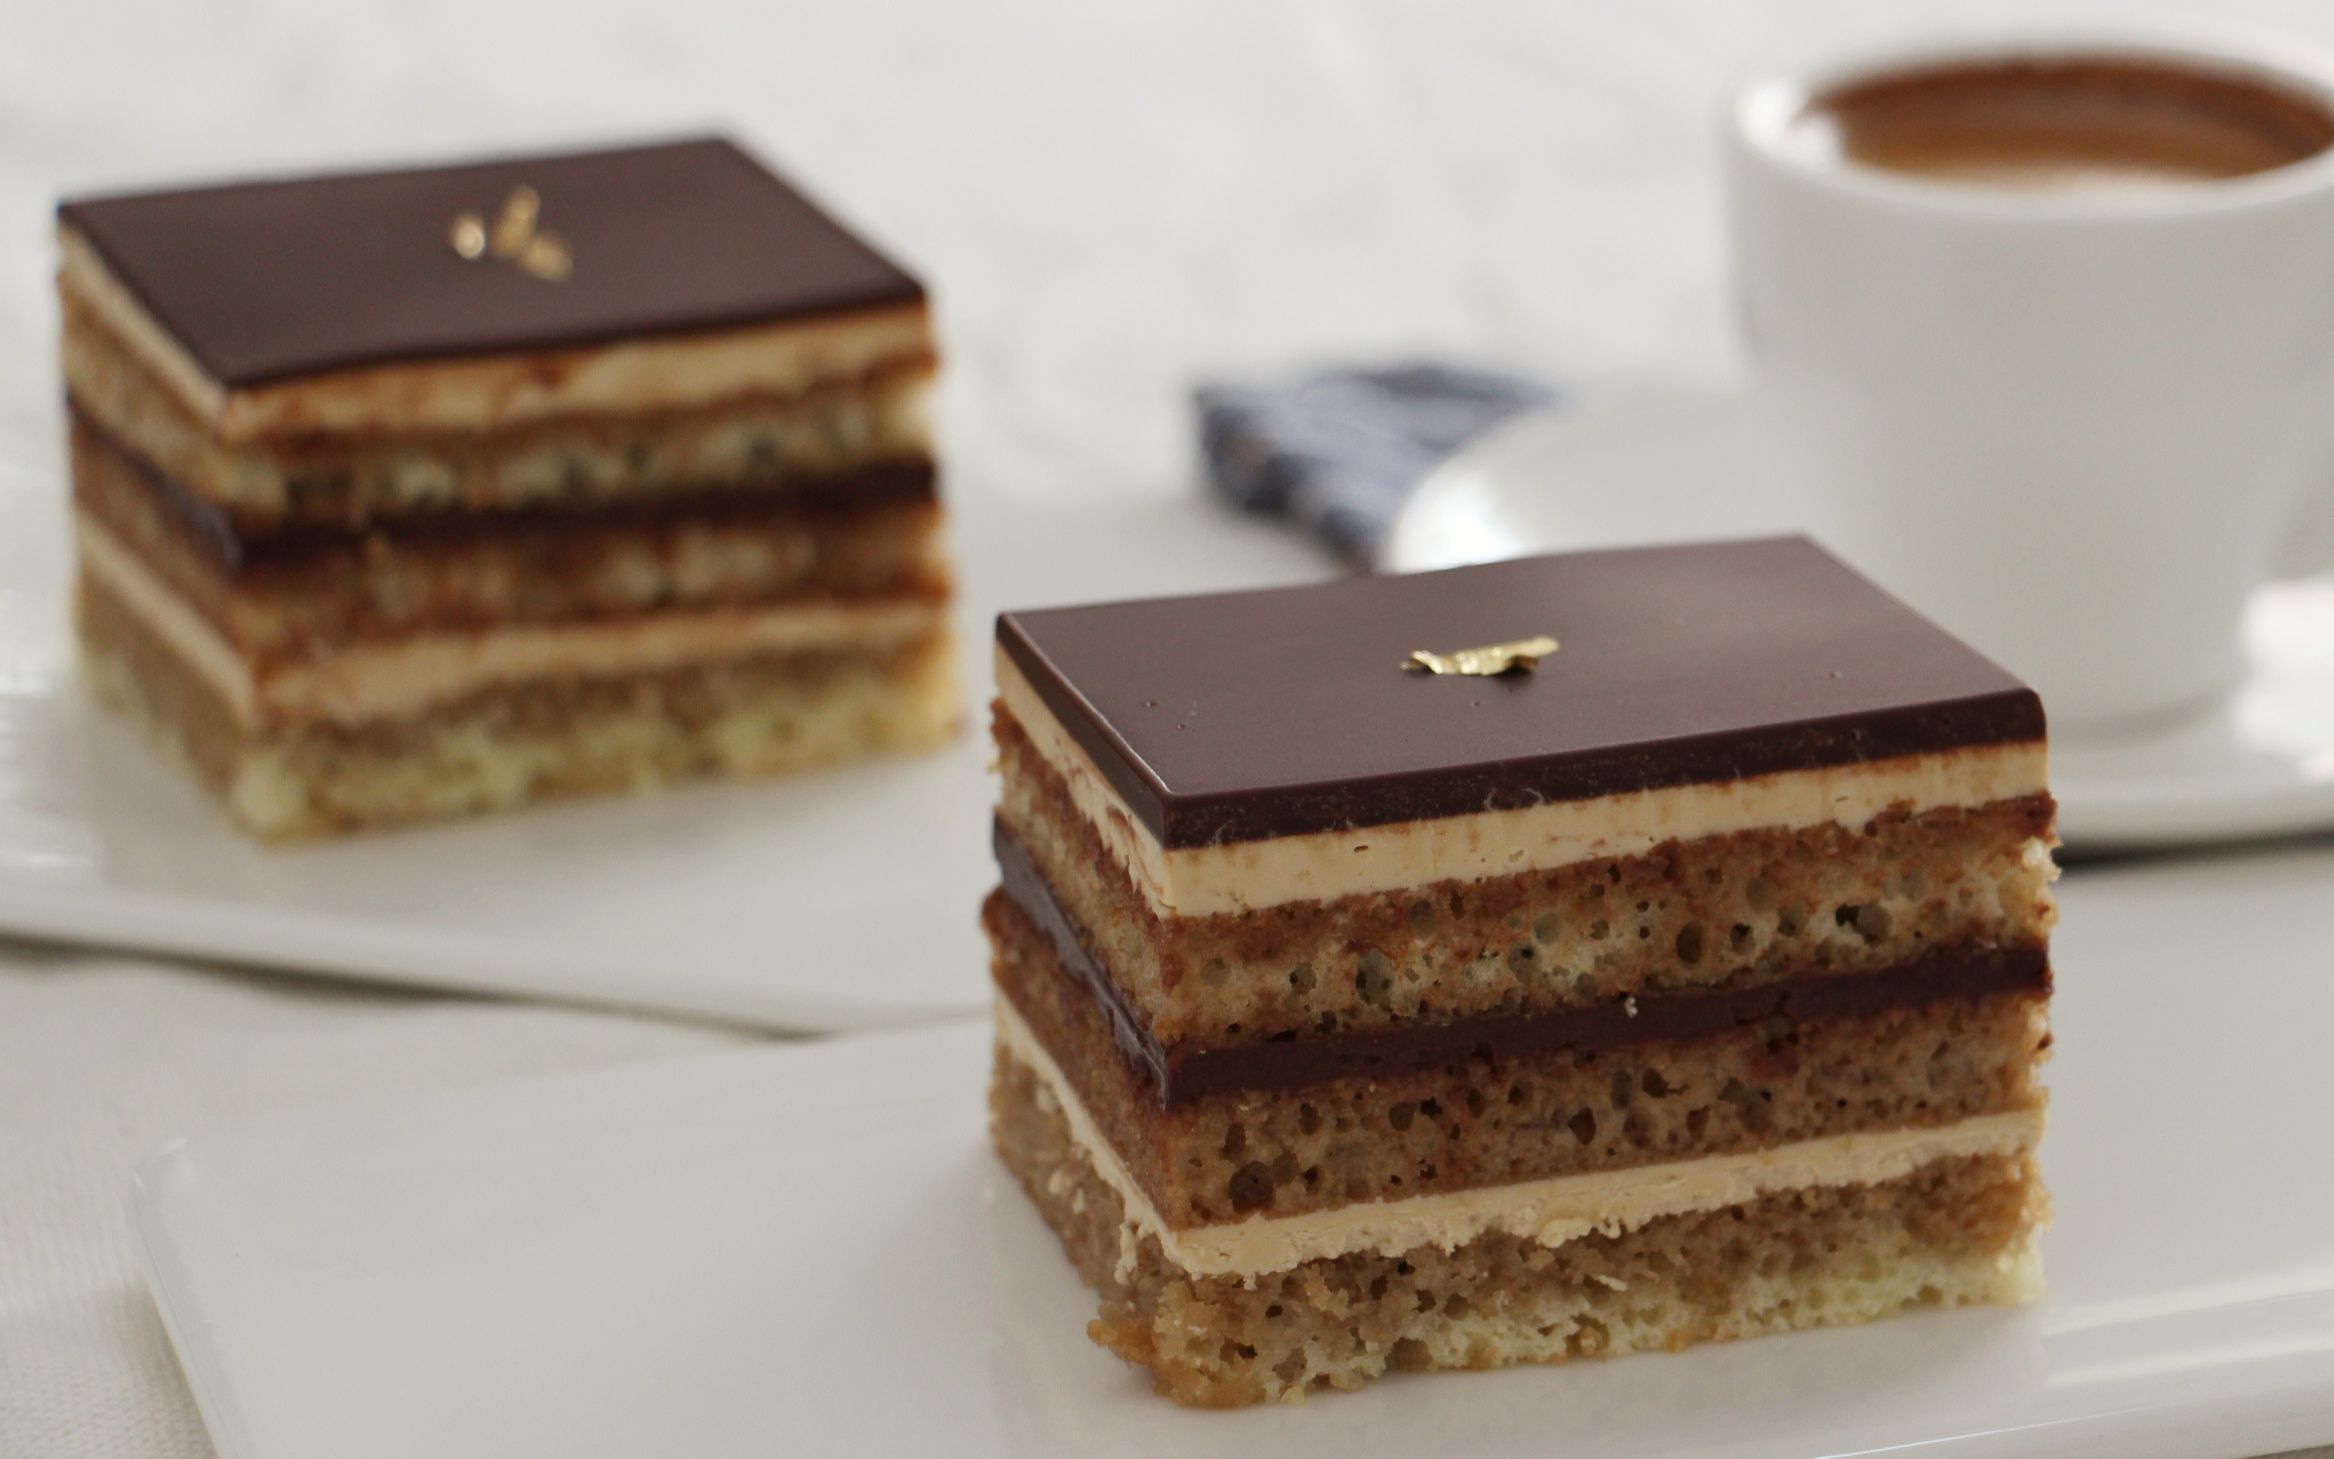 教学歌剧院蛋糕opéra巧克力和咖啡完美的碰撞一款不得不尝的法式甜点